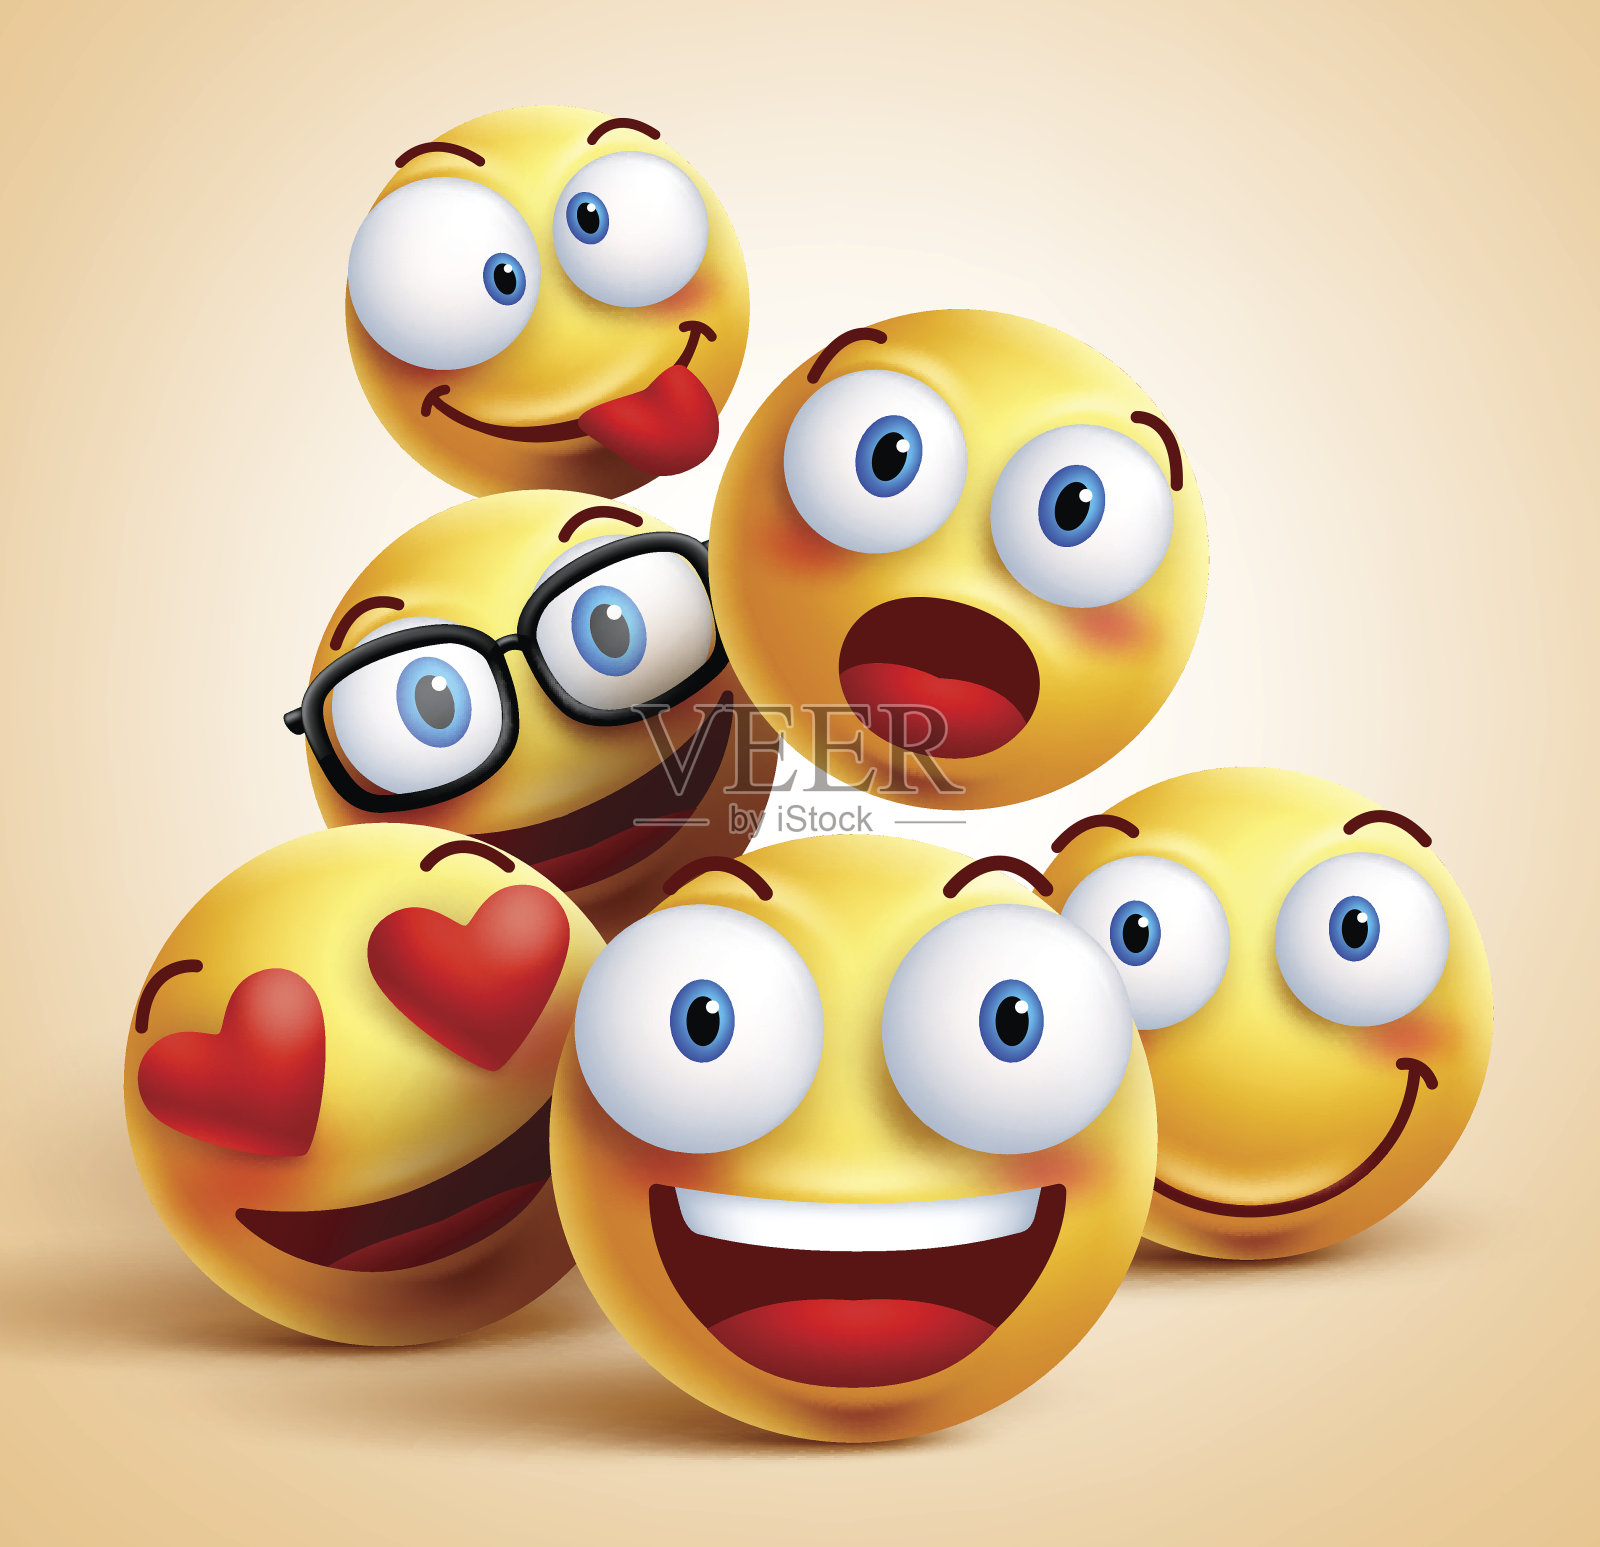 笑脸是一组带有面部表情的矢量表情符号图标素材